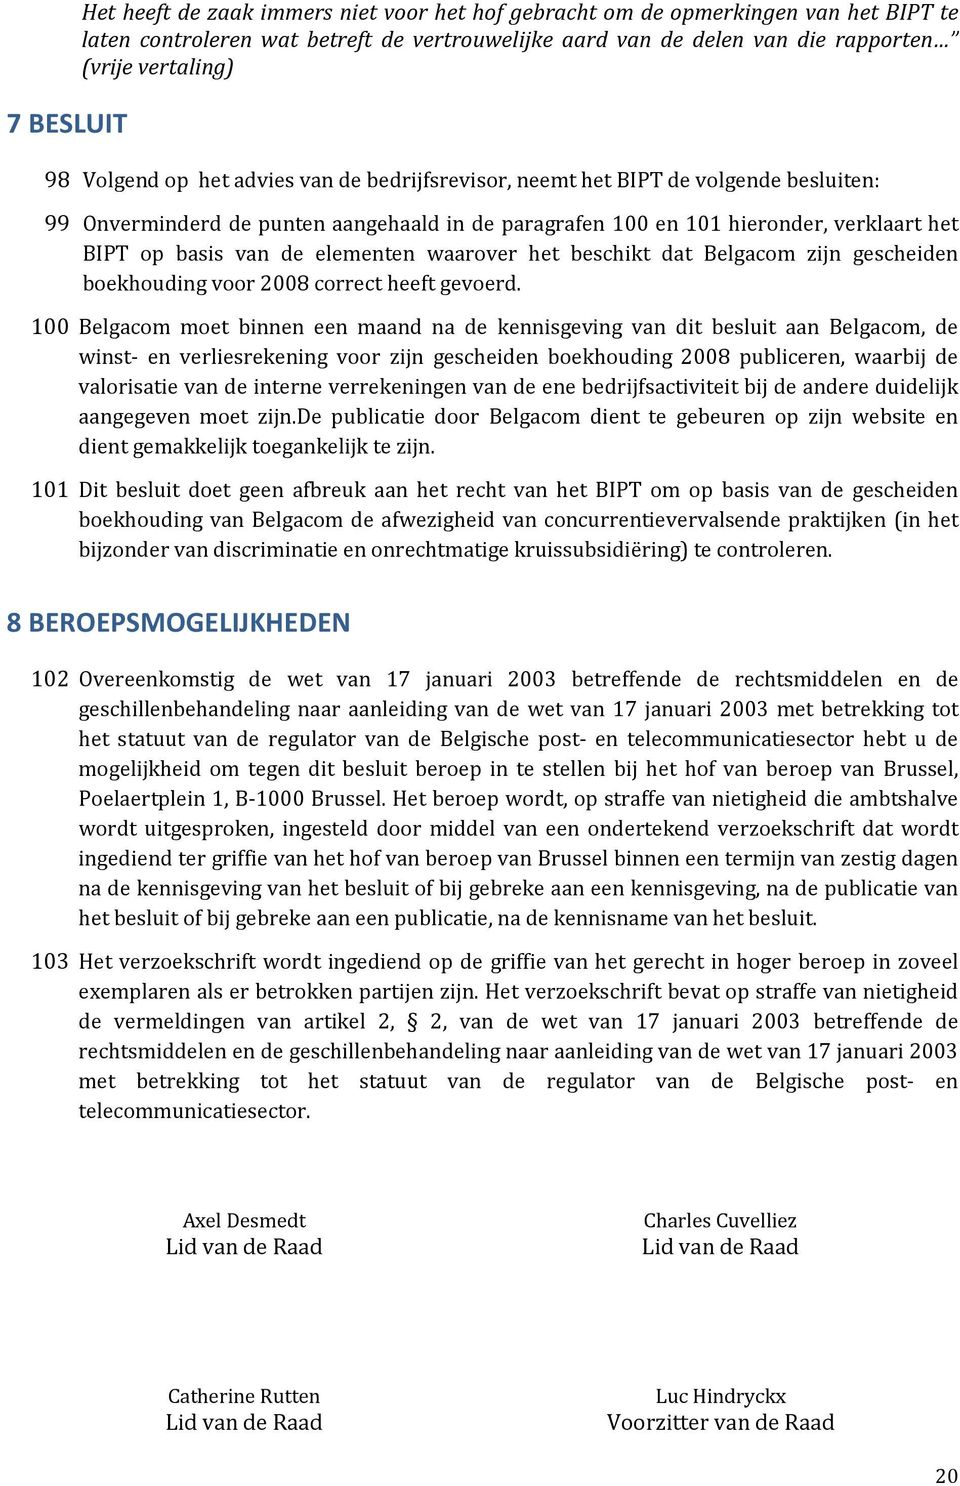 elementen waarover het beschikt dat Belgacom zijn gescheiden boekhouding voor 2008 correct heeft gevoerd.